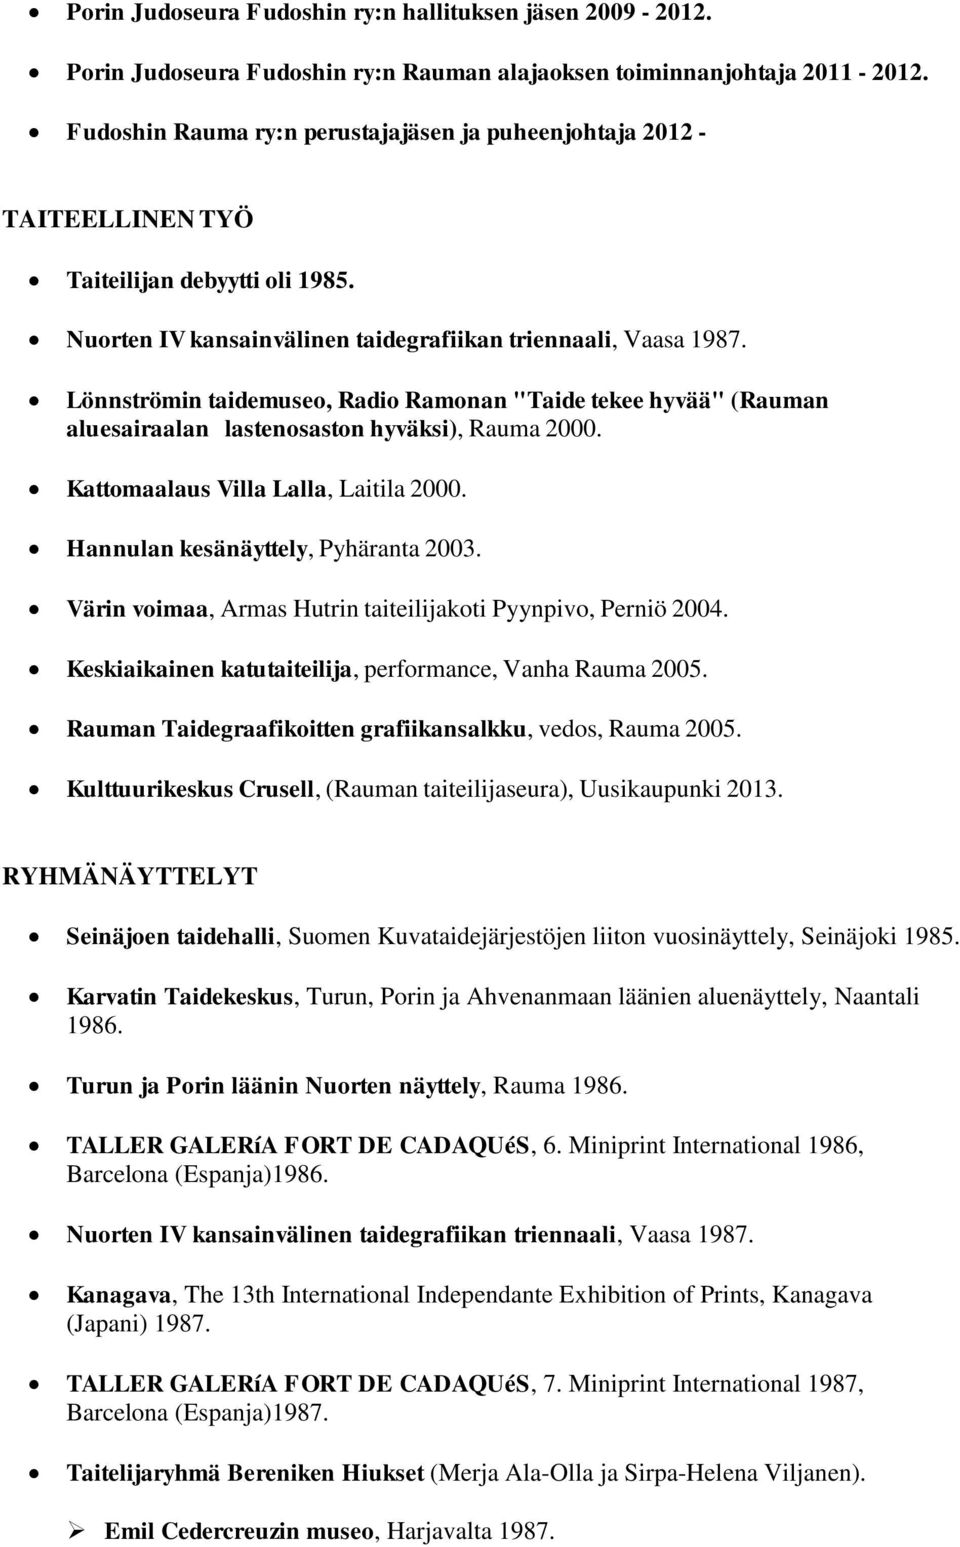 Lönnströmin taidemuseo, Radio Ramonan "Taide tekee hyvää" (Rauman aluesairaalan lastenosaston hyväksi), Rauma 2000. Kattomaalaus Villa Lalla, Laitila 2000. Hannulan kesänäyttely, Pyhäranta 2003.